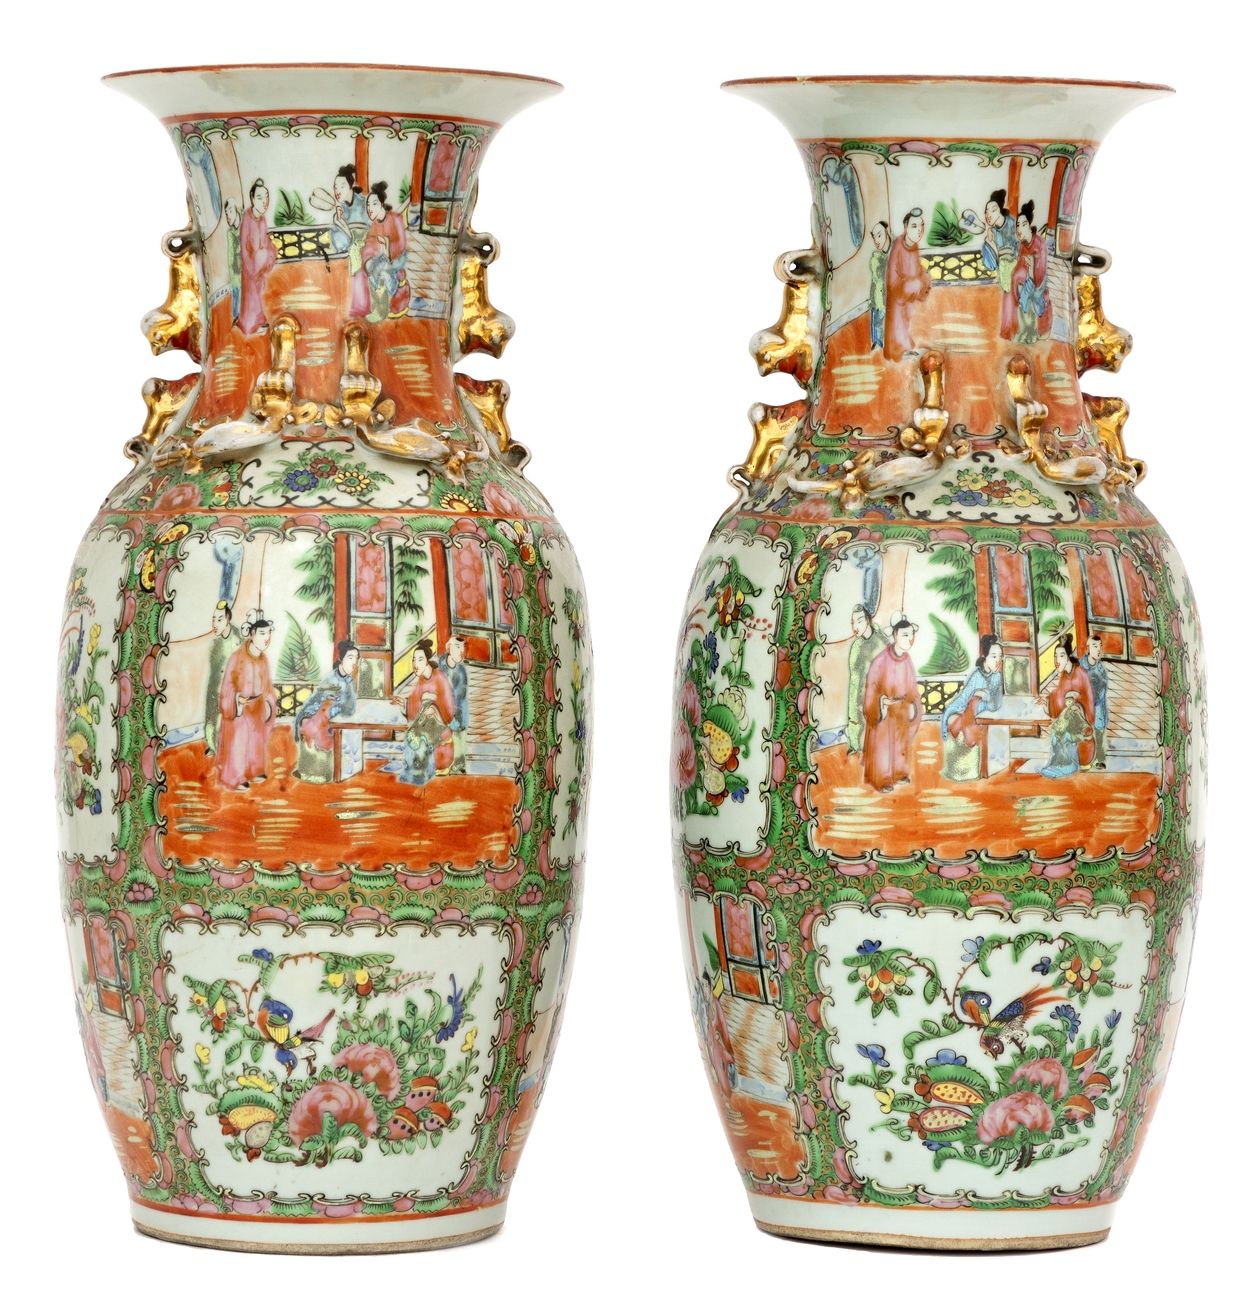 Null China, um 1900
Ein Paar Vasen aus Kanton-Porzellan mit einem Dekor aus rosa&hellip;